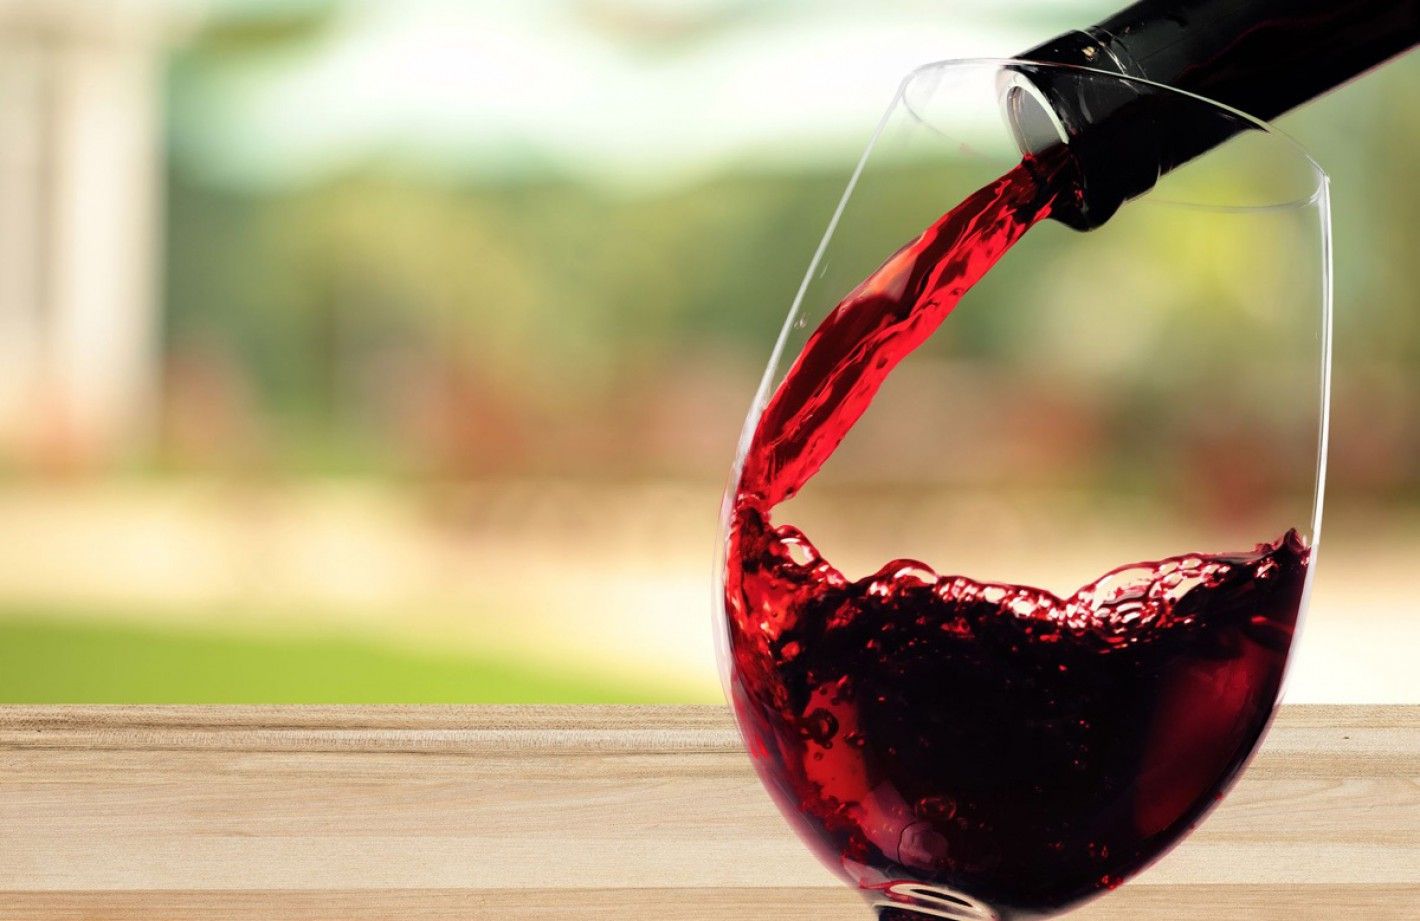 La Cámara Oficial de Comercio de España realiza degustación anual de vinos